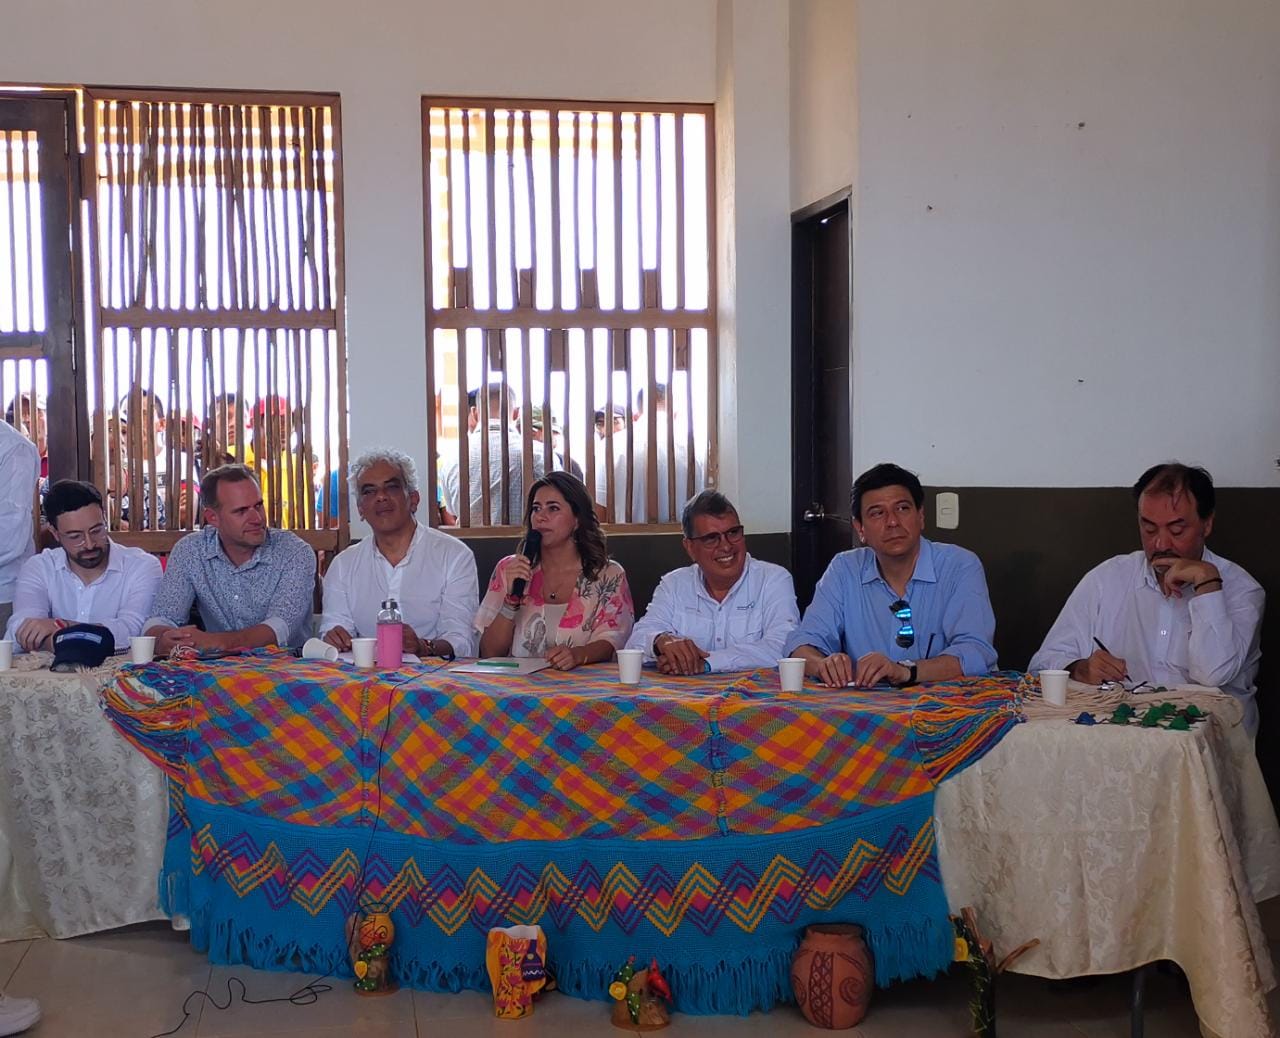 Gobierno nacional entregó hidropáneles solares, en colaboración con la Cancillería, a comunidad en La Guajira